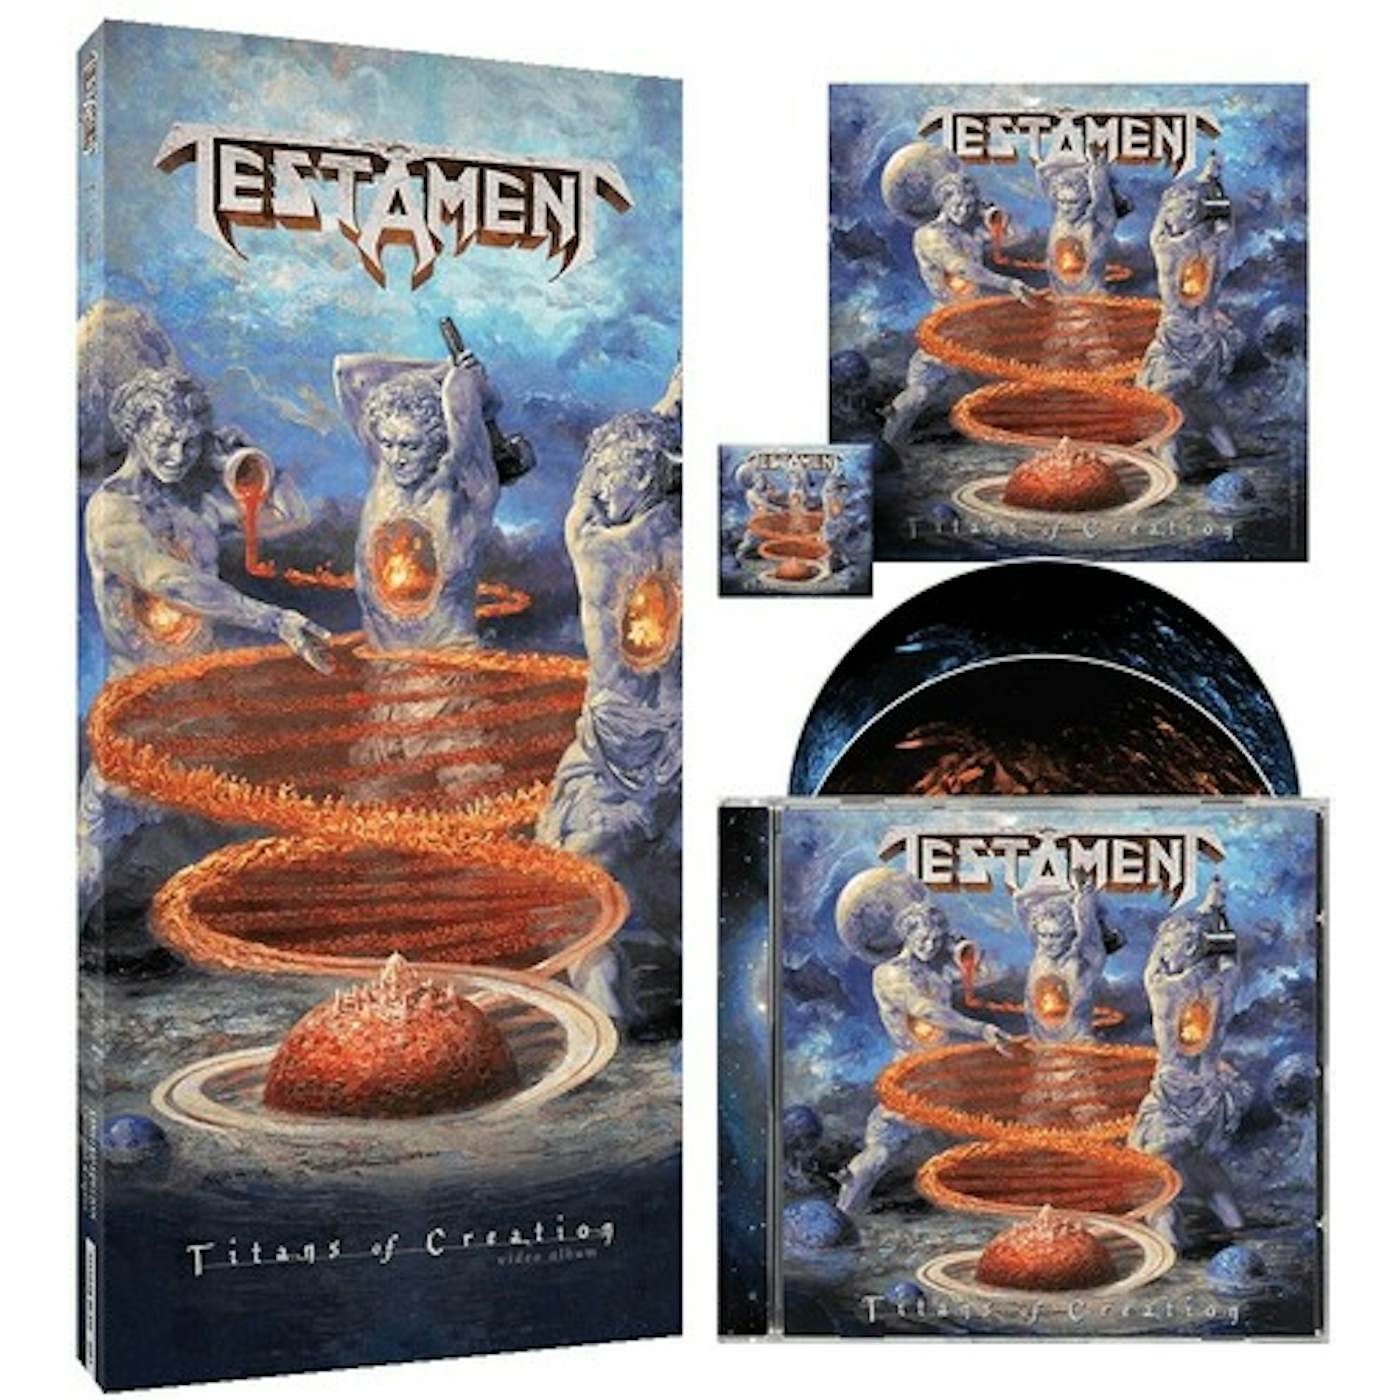 Testament TITANS OF CREATION - VIDEO ALBUM CD